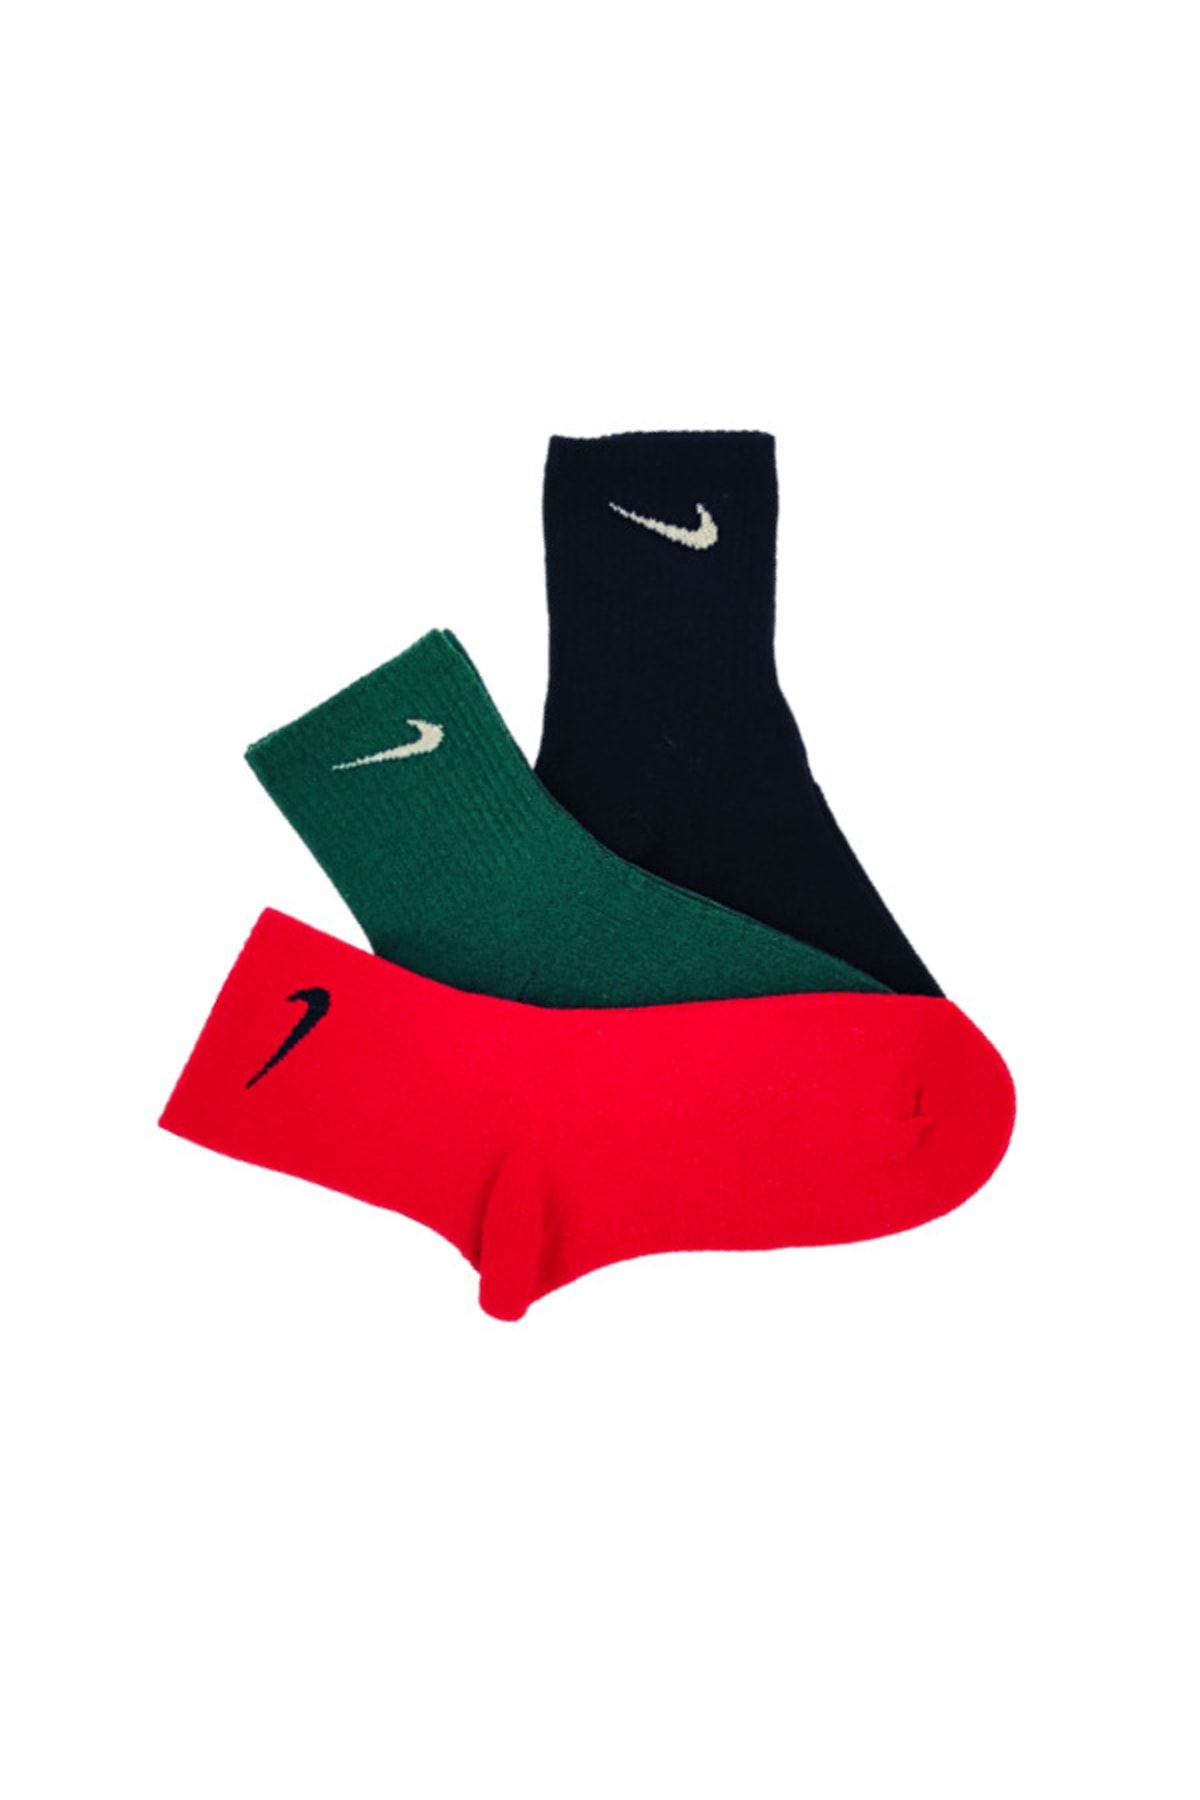 Genel Markalar 3'lü Unisex Siyah Kırmızı Yeşil Antrenman Spor Tenis Futbol Basketbol Koşu Soket Çorap Seti